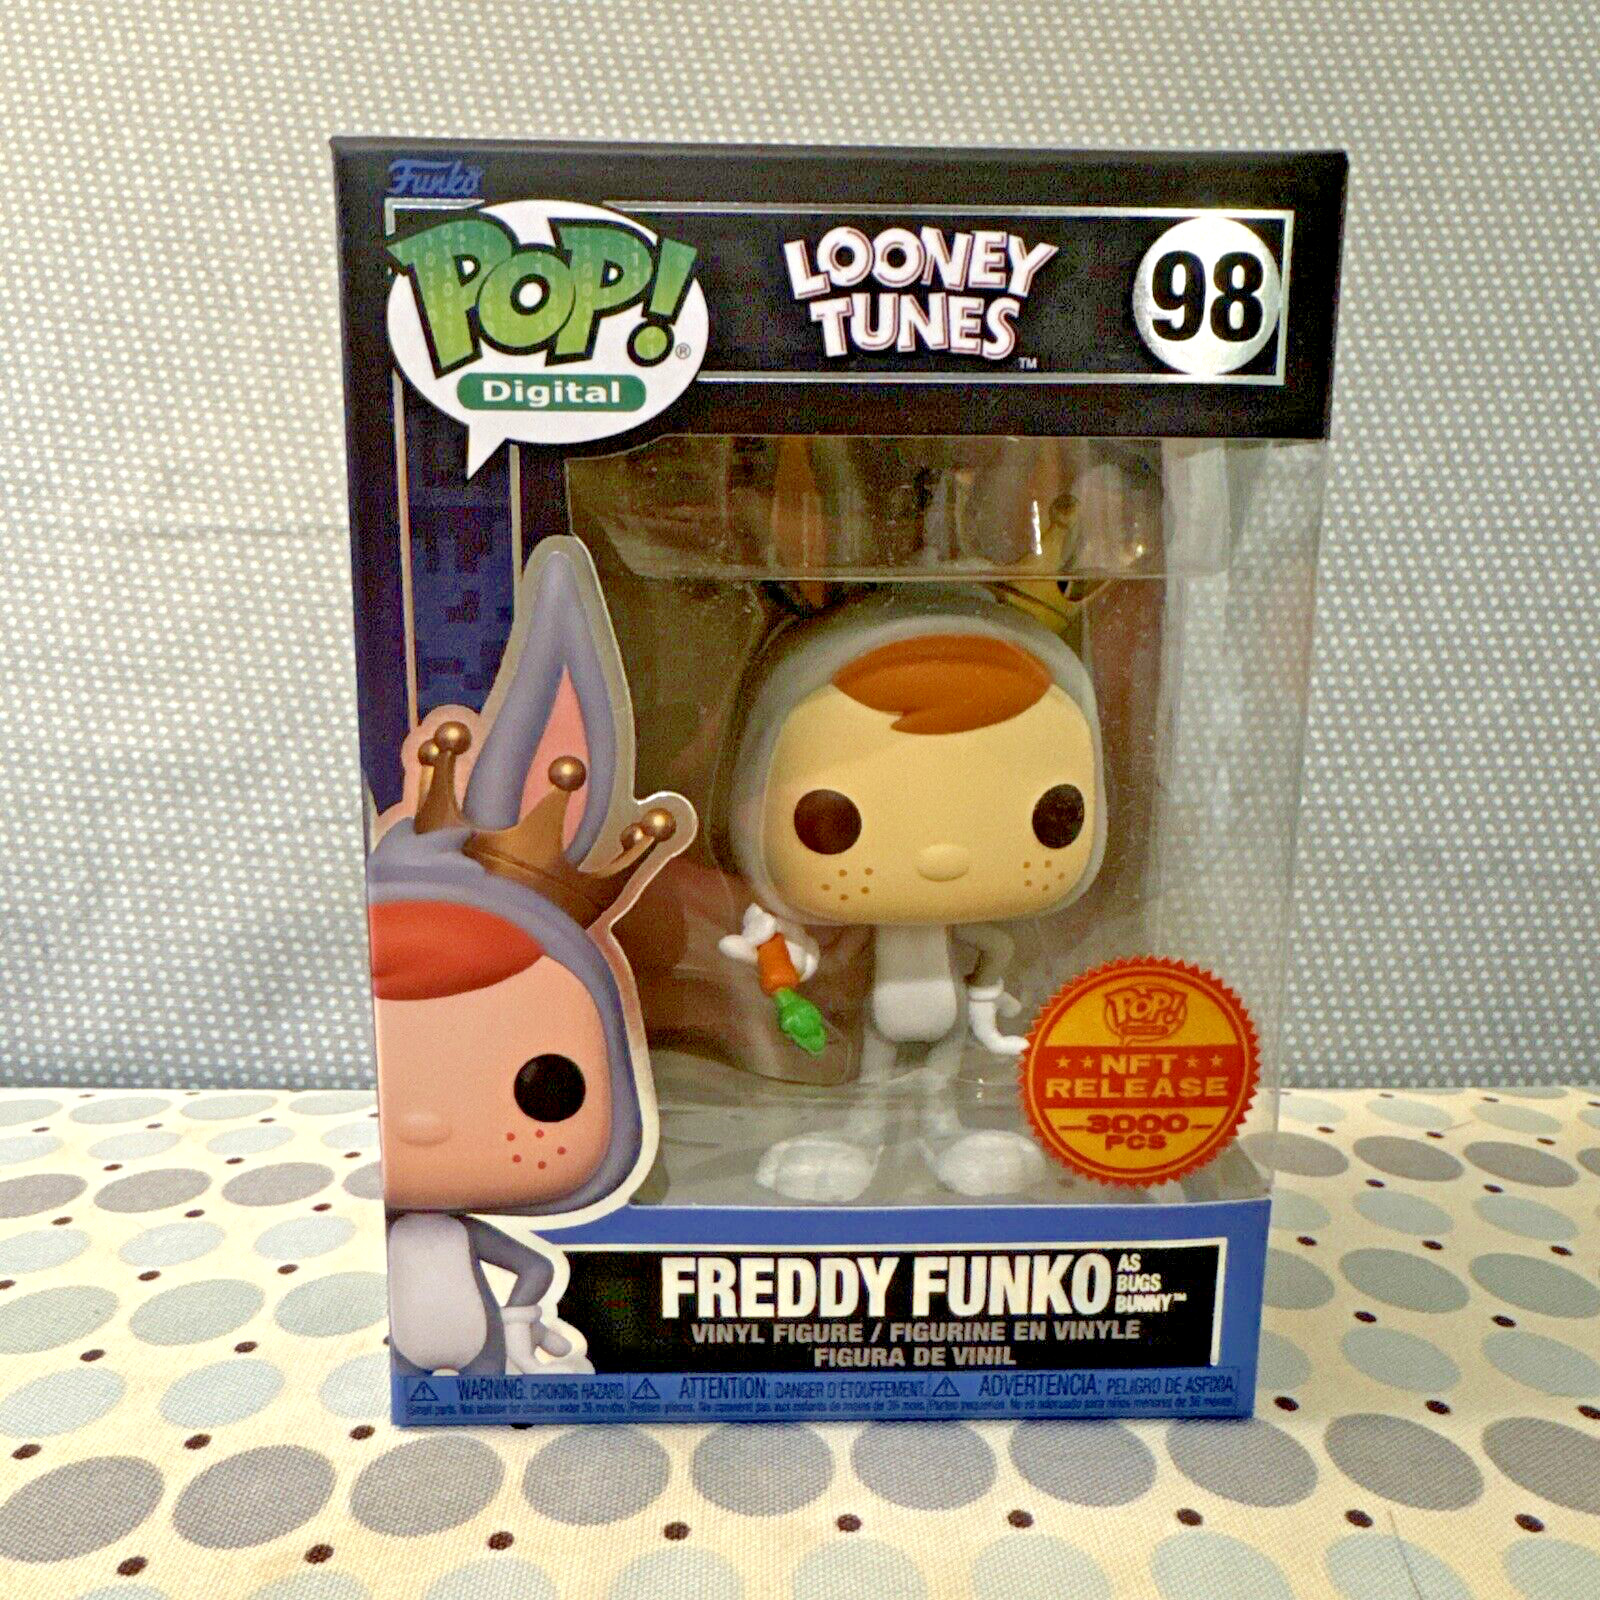 Funko Pop Digital Looney Tunes - Freddy Funko as Bugs Bunny #98 LE 3000 - NEW